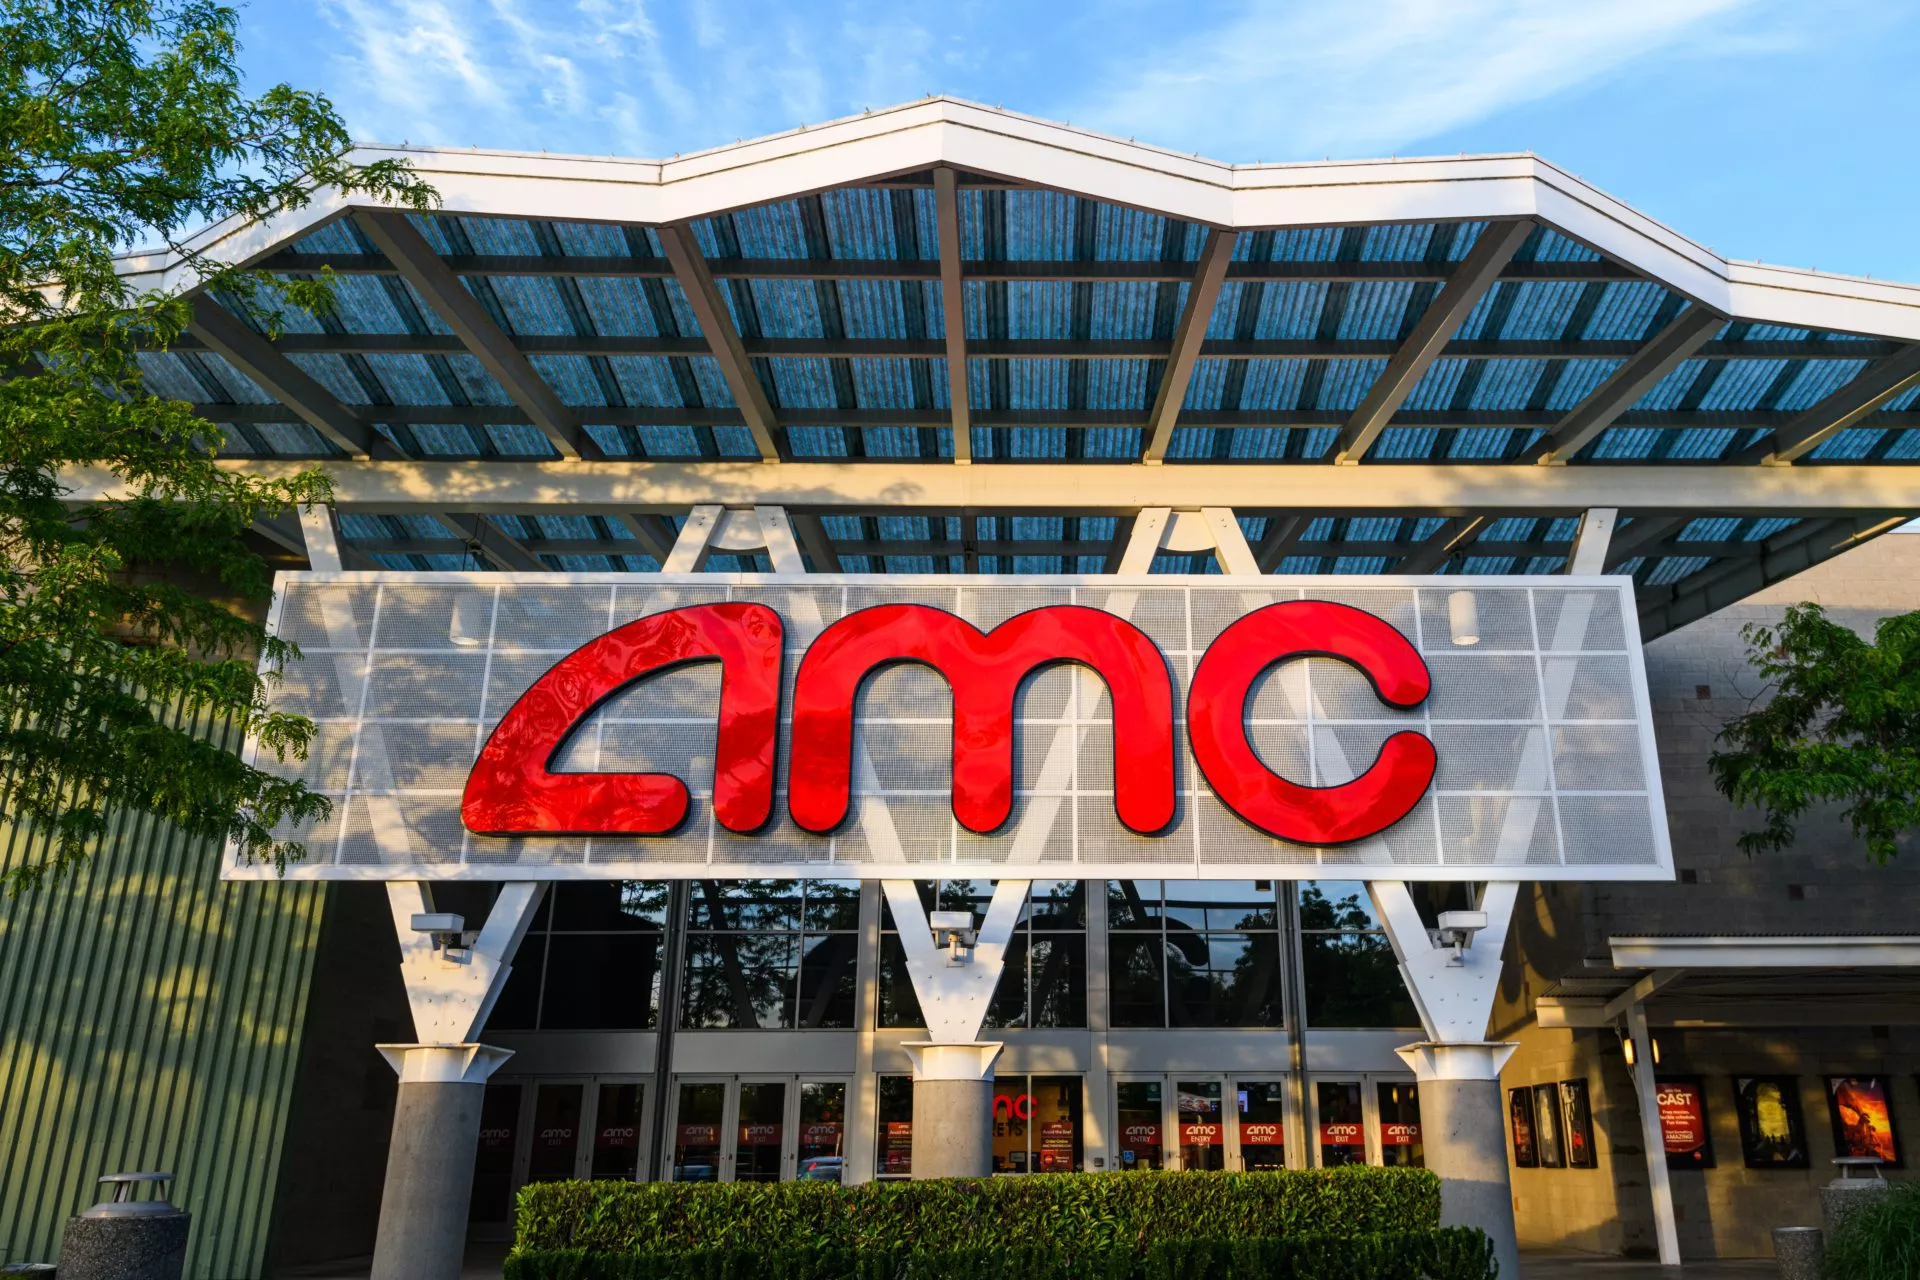 Ruim een derde van de online betalingen van AMC zijn crypto